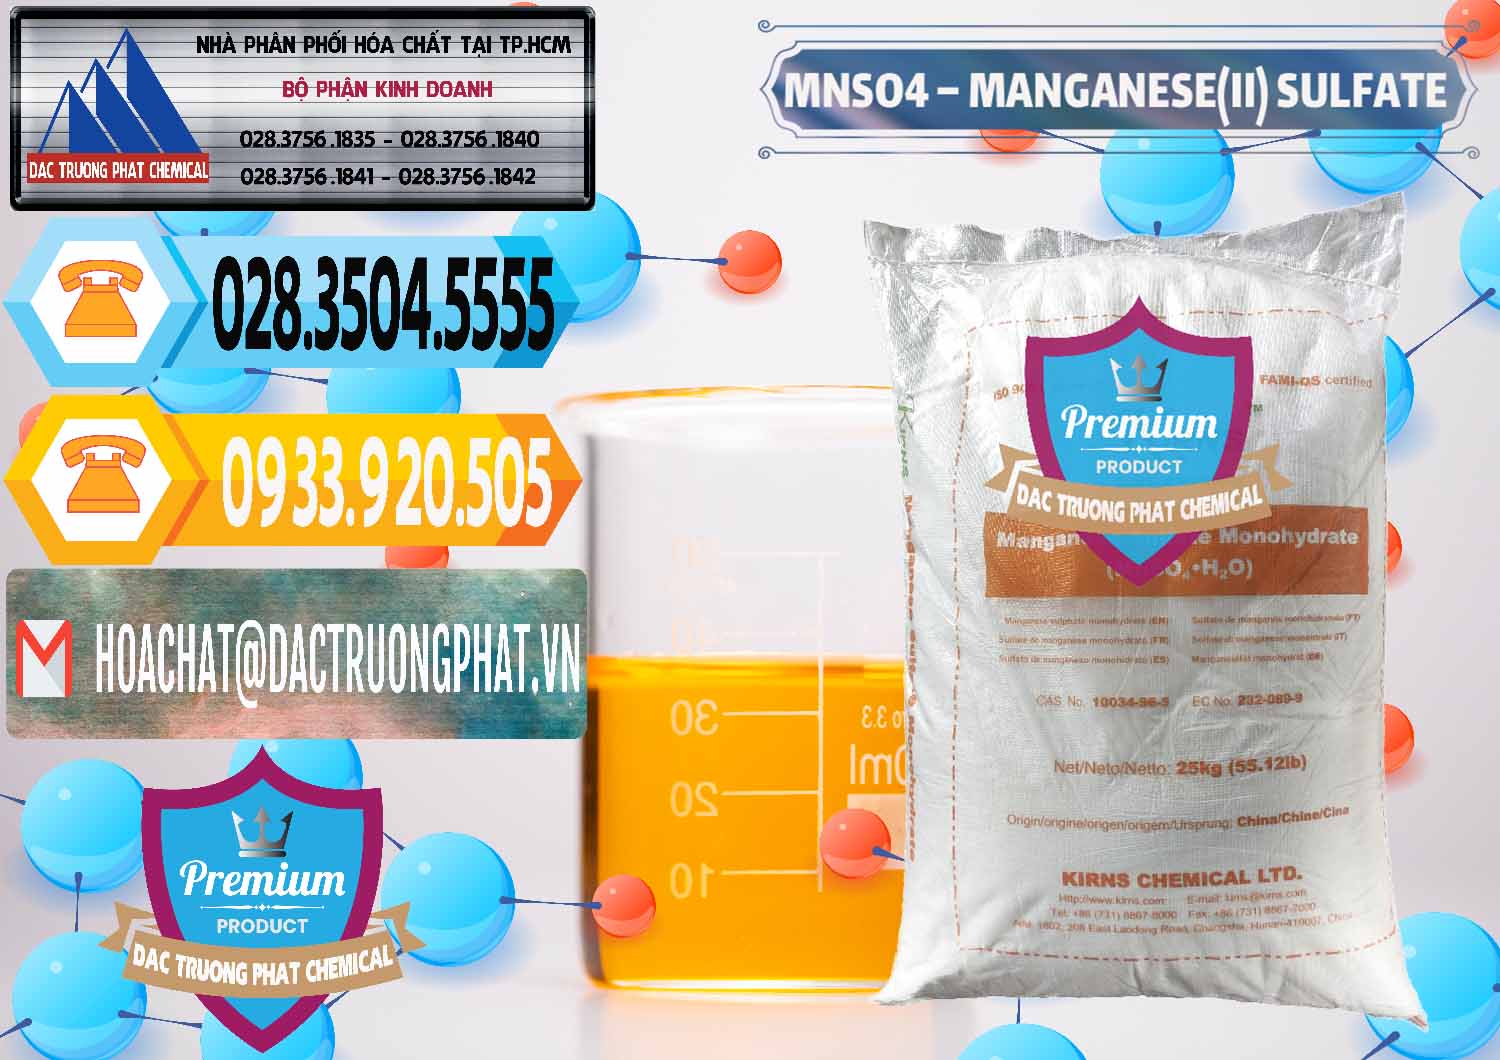 Công ty cung cấp - bán MNSO4 – Manganese (II) Sulfate Kirns Trung Quốc China - 0095 - Chuyên phân phối - nhập khẩu hóa chất tại TP.HCM - hoachattayrua.net